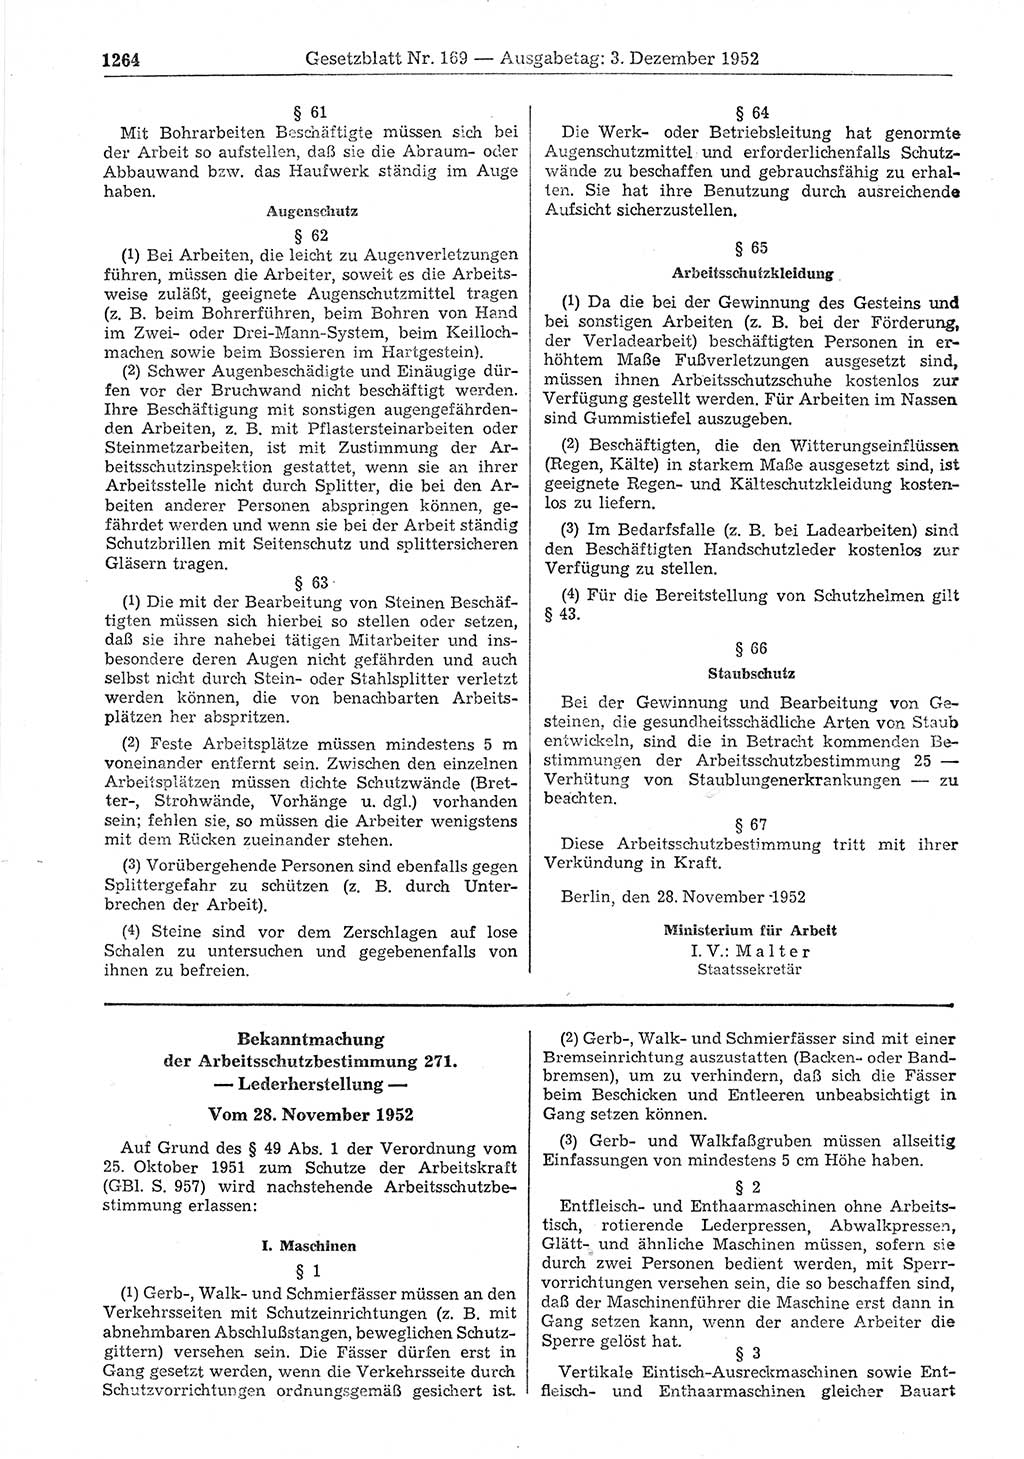 Gesetzblatt (GBl.) der Deutschen Demokratischen Republik (DDR) 1952, Seite 1264 (GBl. DDR 1952, S. 1264)